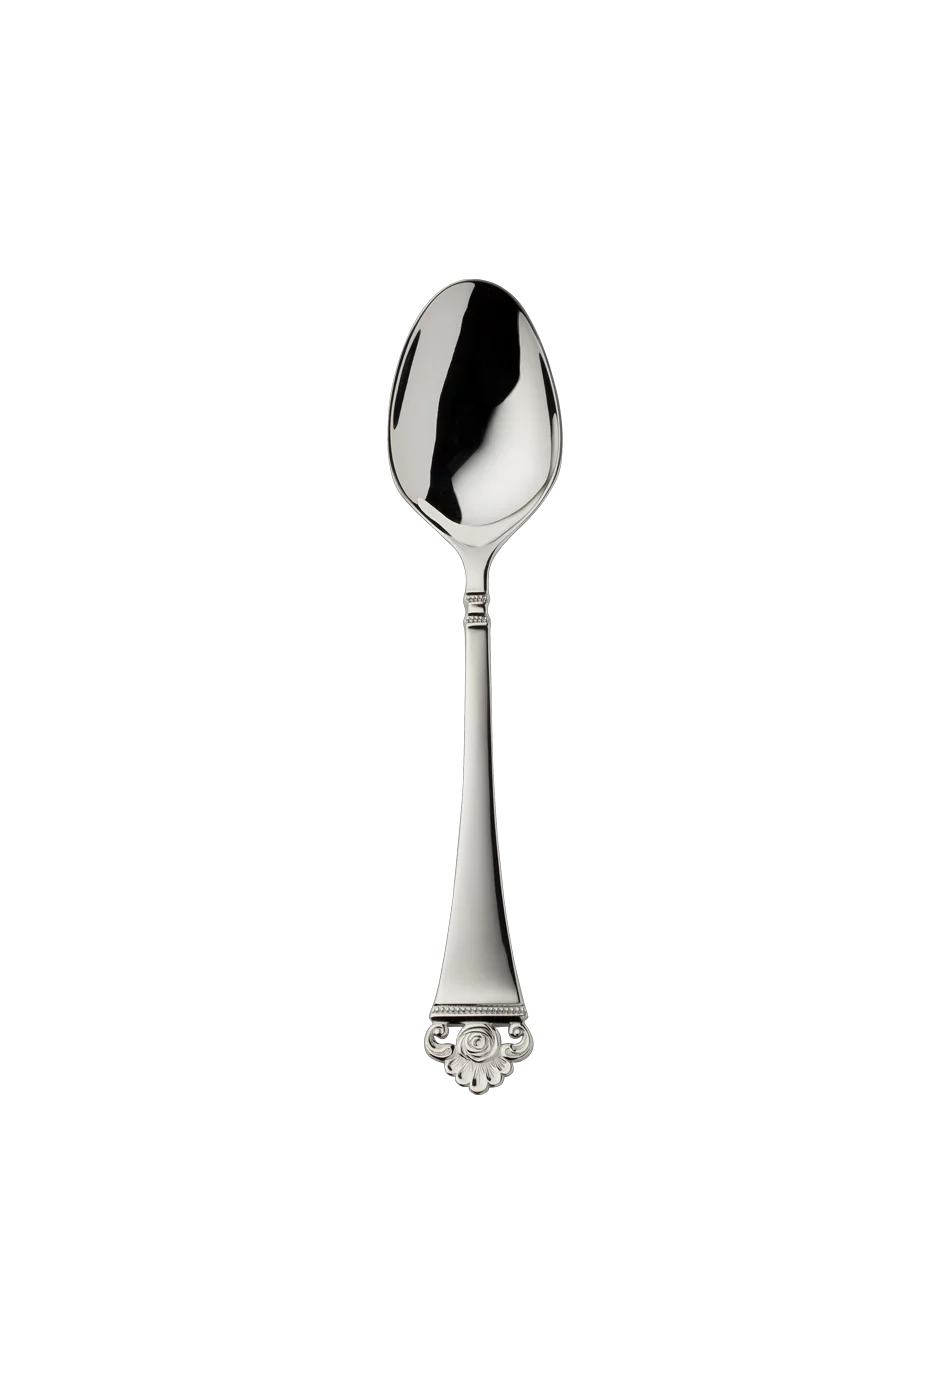 Rosenmuster Children's Spoon (150g massive silverplated)